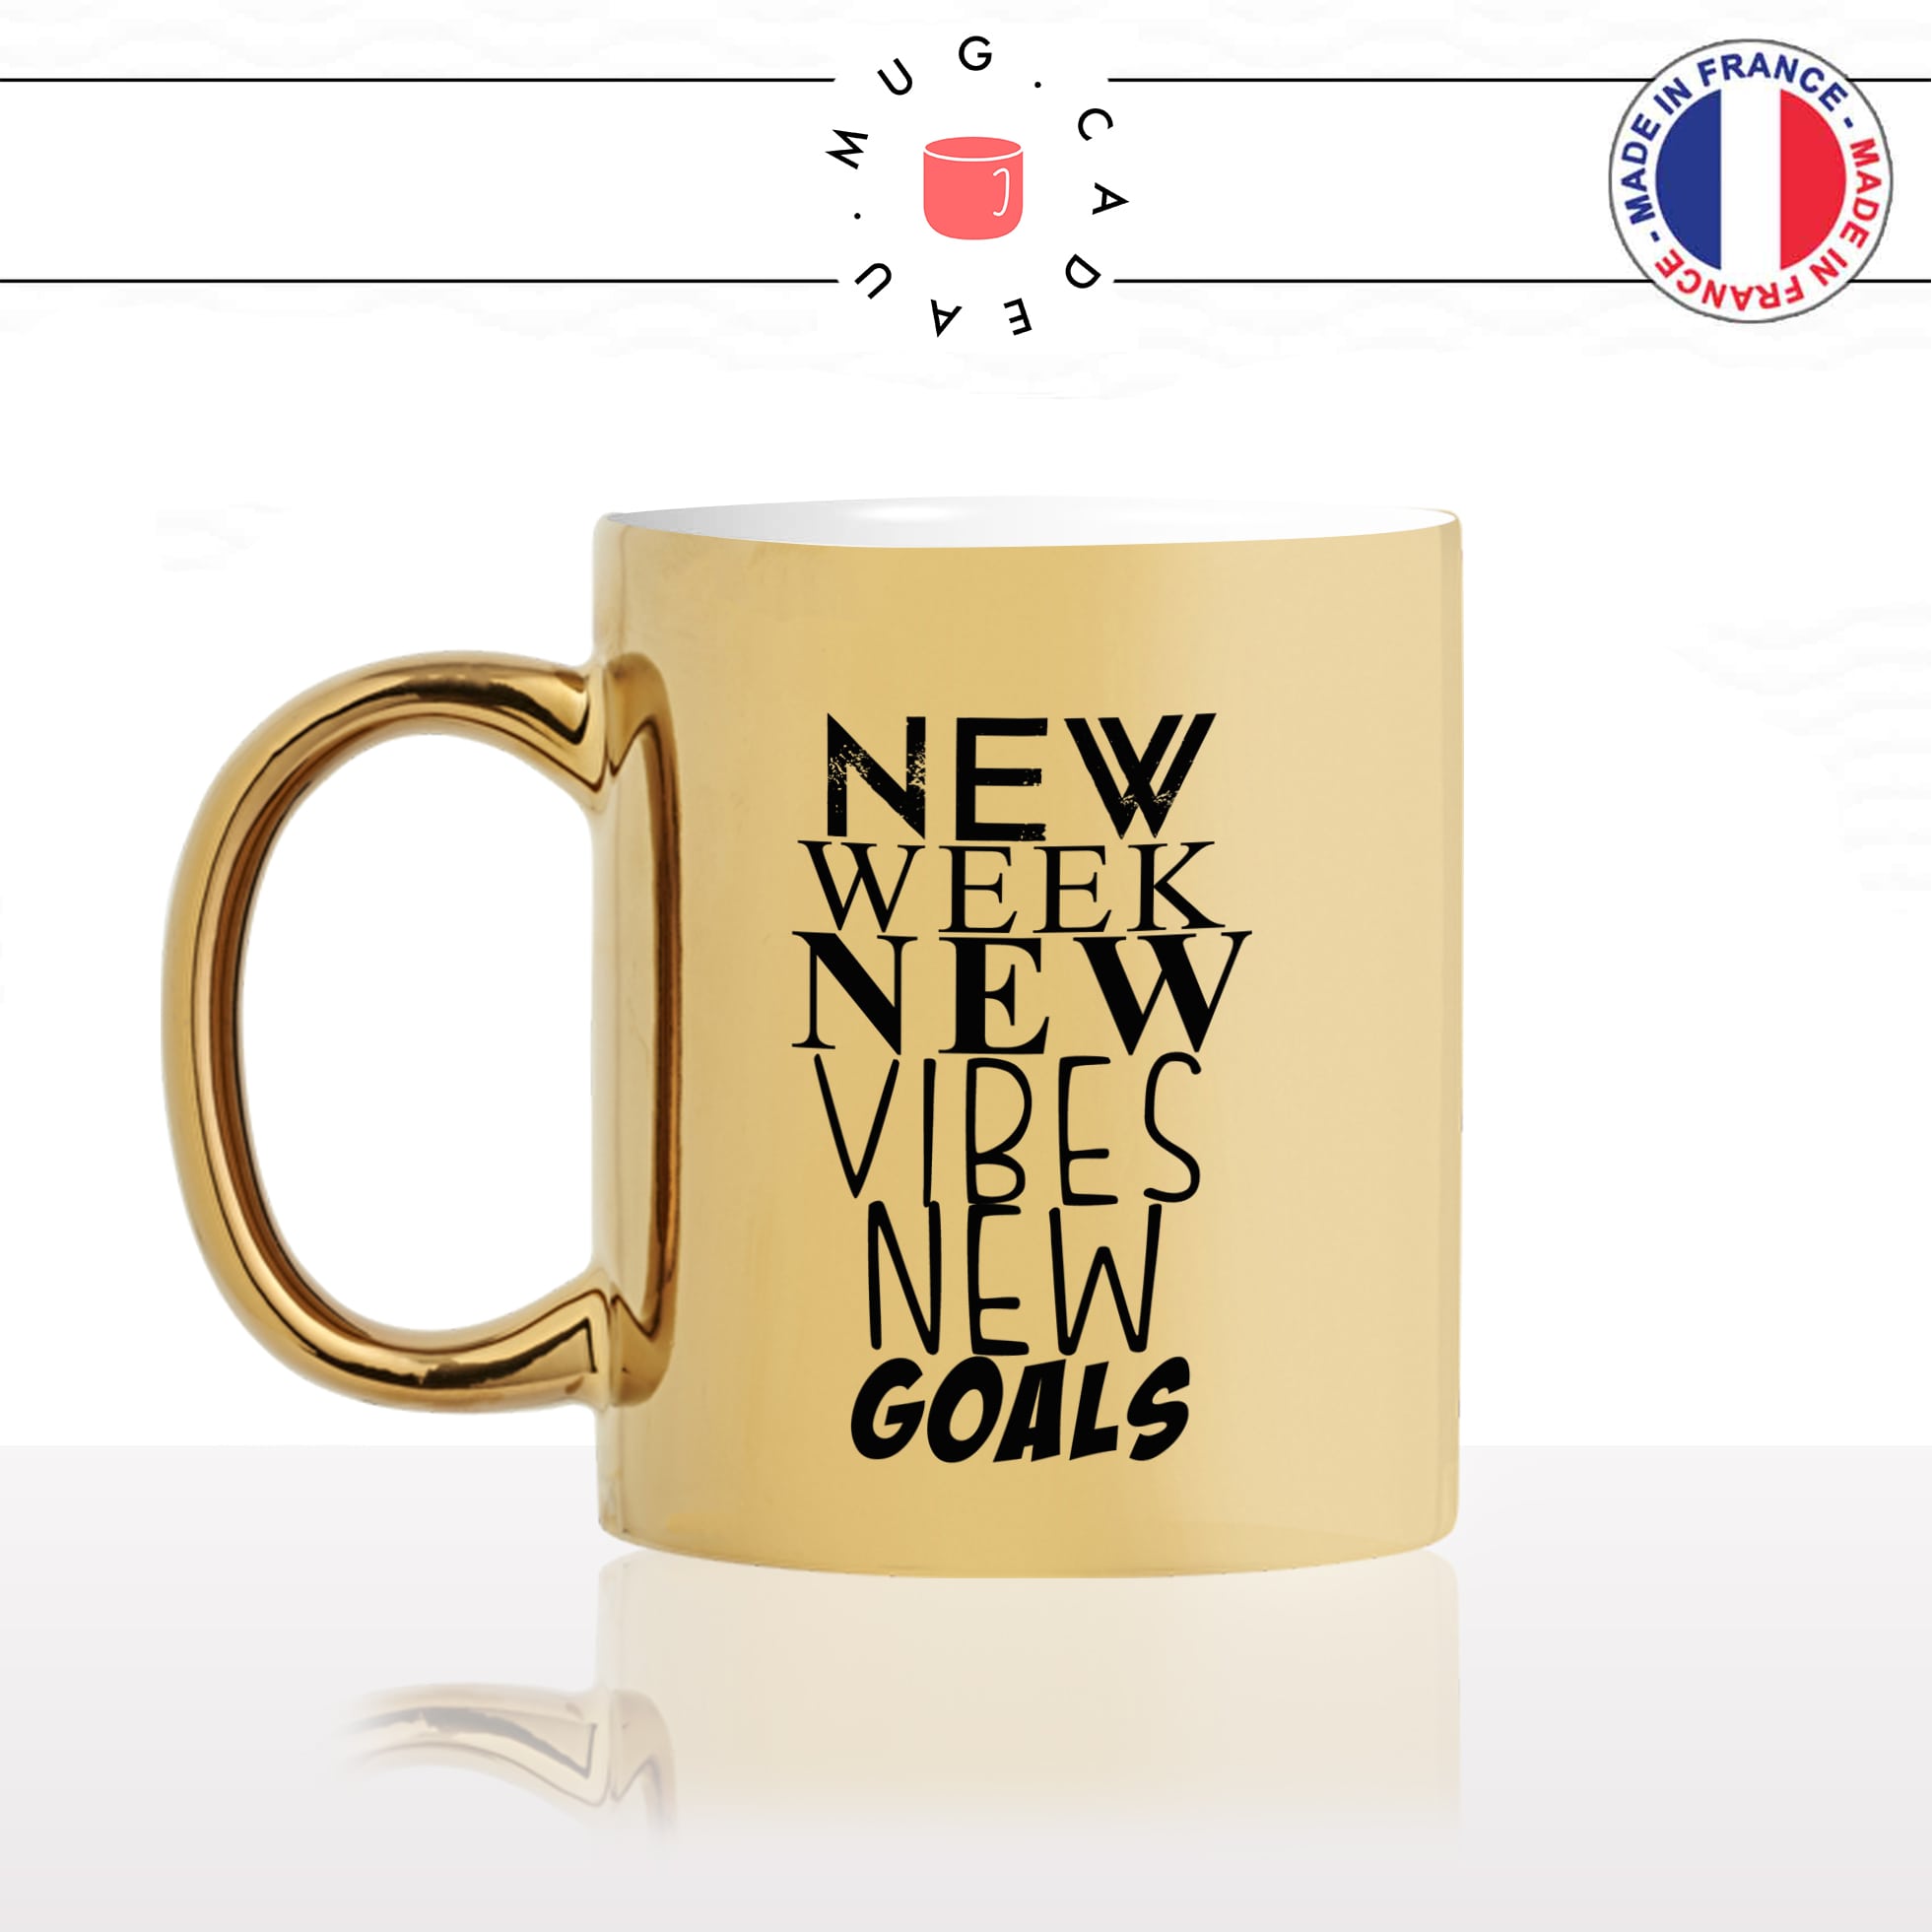 mug-tasse-doré-or-gold-new-week-vibes-goals-citation-phrase-dicton-humour-fun-idée-cadeau-personnalisé-café-thé-min